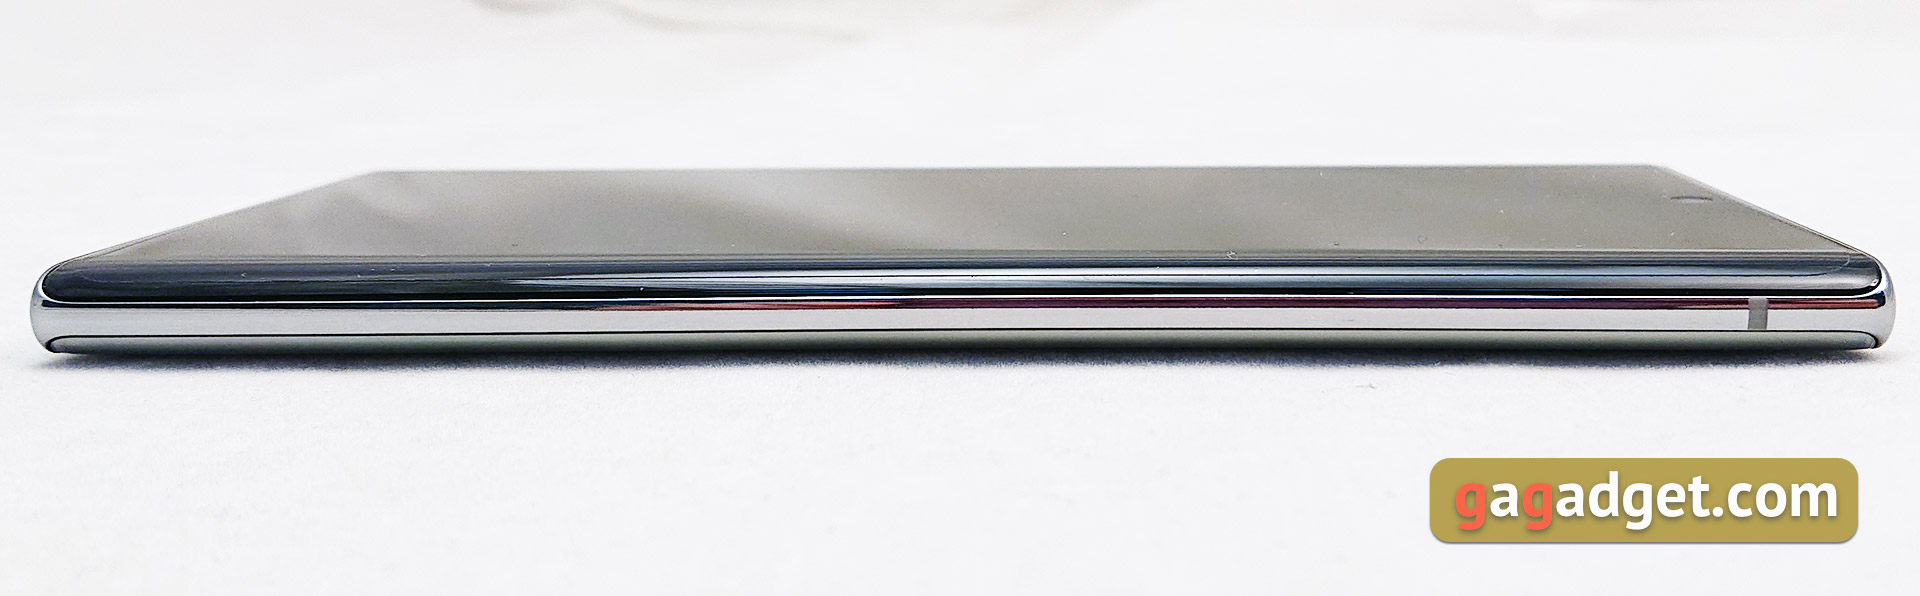 Recenzja Samsung Galaxy Note10: ten sam flagowiec, ale mniejszy-9